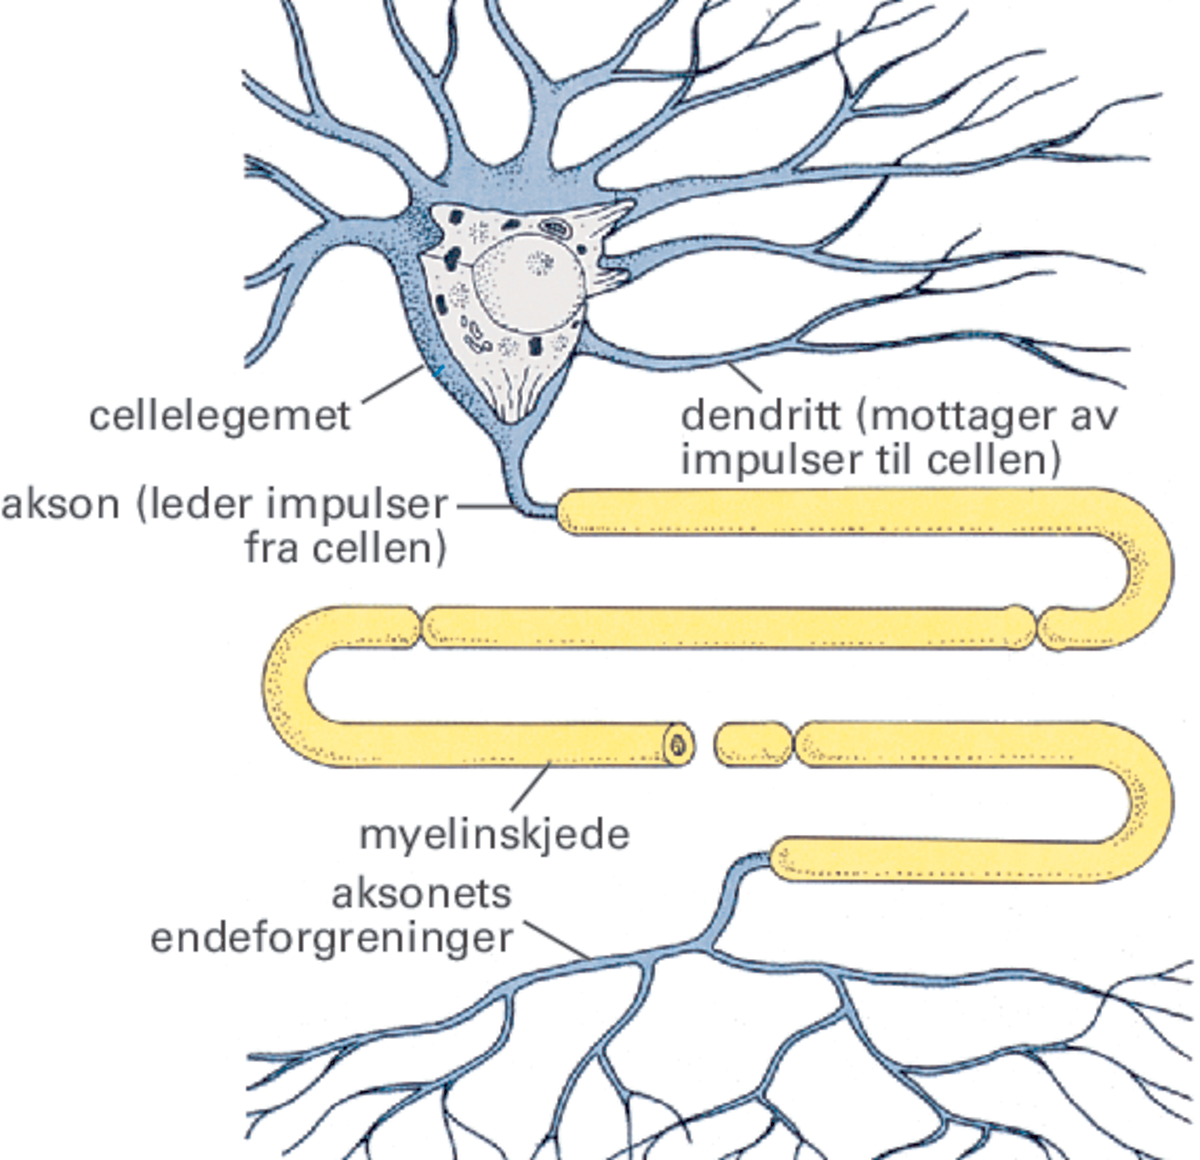 Figur av en nervecelle. Øverst er selve cellelegemet med mange utløpere som greinene på et tre. Fra cellelegemet går det én lang utløper, aksonet. Aksonet slynger seg frem og tilbake og er omgitt av en gul myelinskjede. Aksonet ender i mange endegrener, som et rotsystem. 